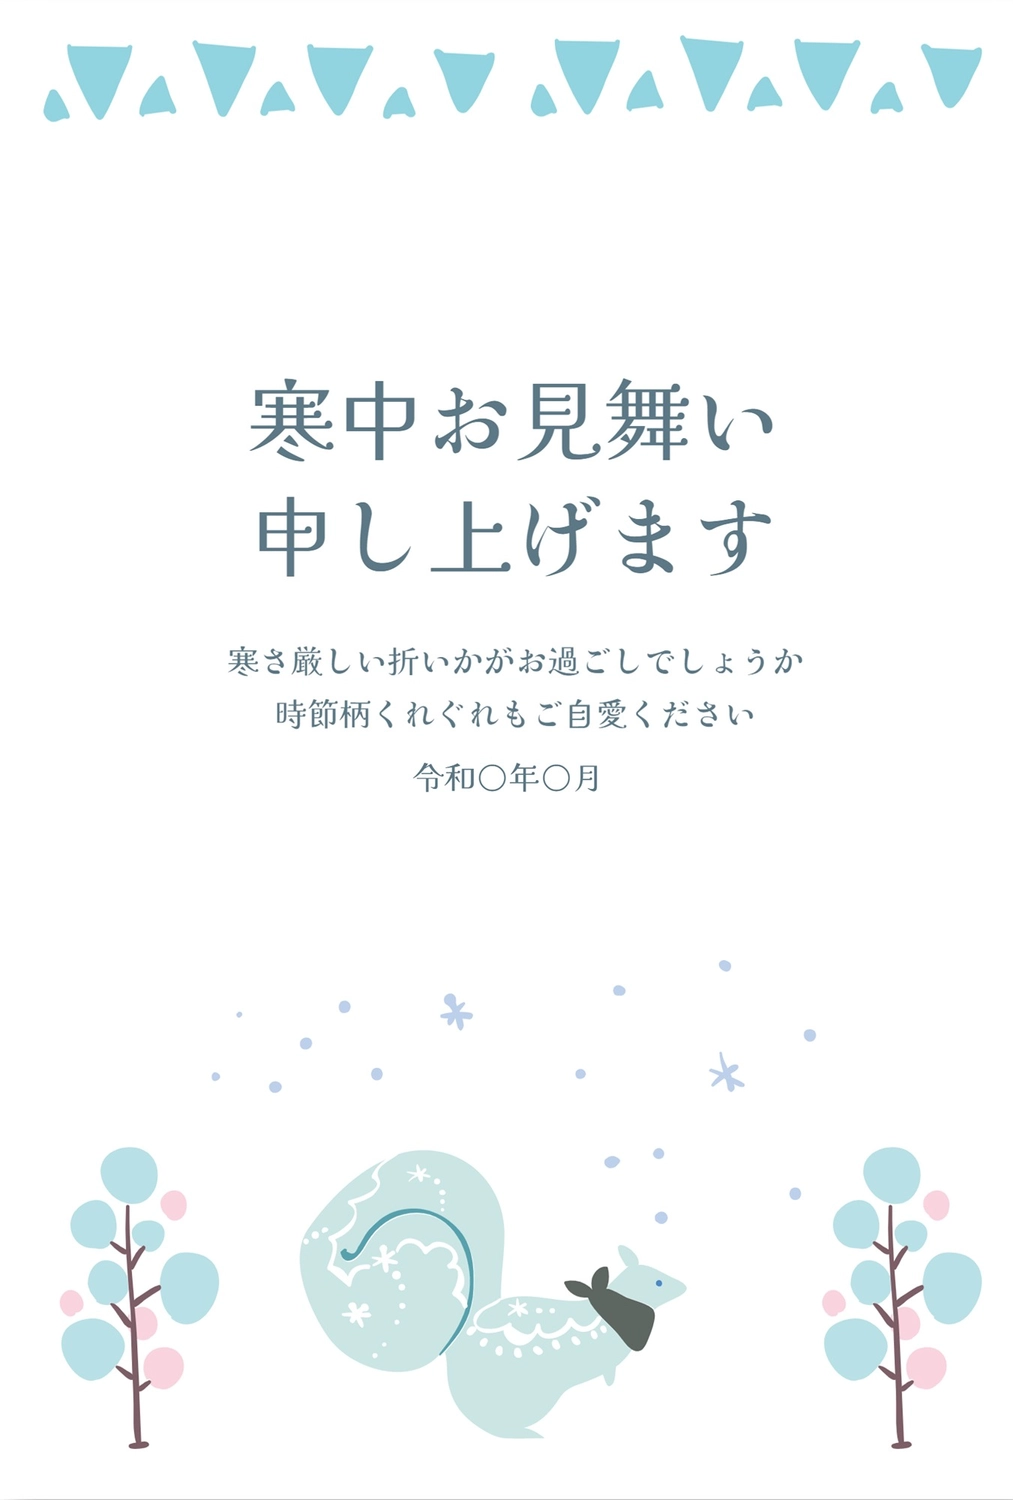 寒中見舞い　リス, Greeting card, Squirrel, February, Mid-winter Greeting template